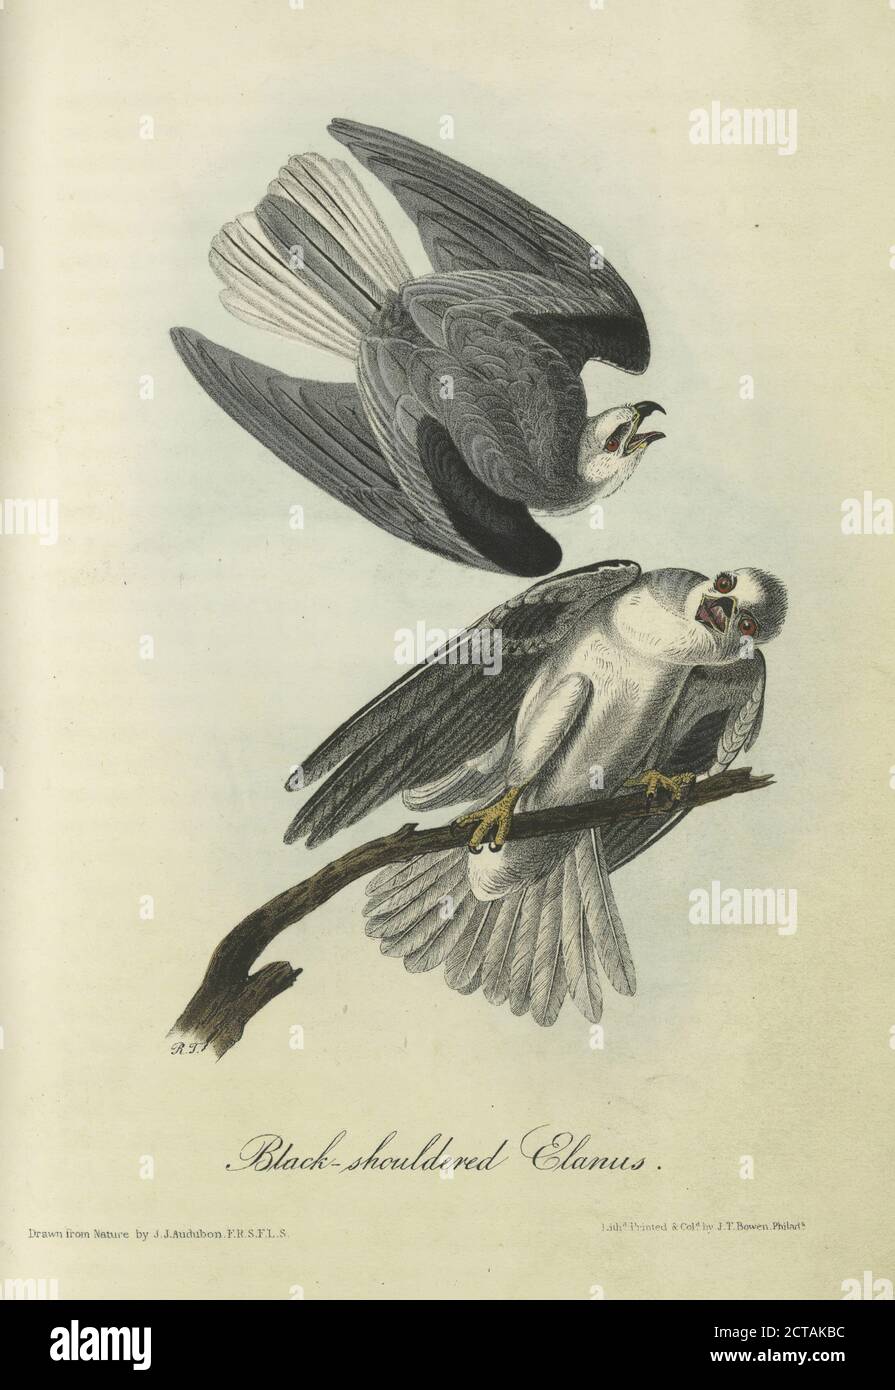 Schwarz-schulterte Elanus, Standbild, Drucke, 1840, Audubon, John James, 1785-1851 Stockfoto